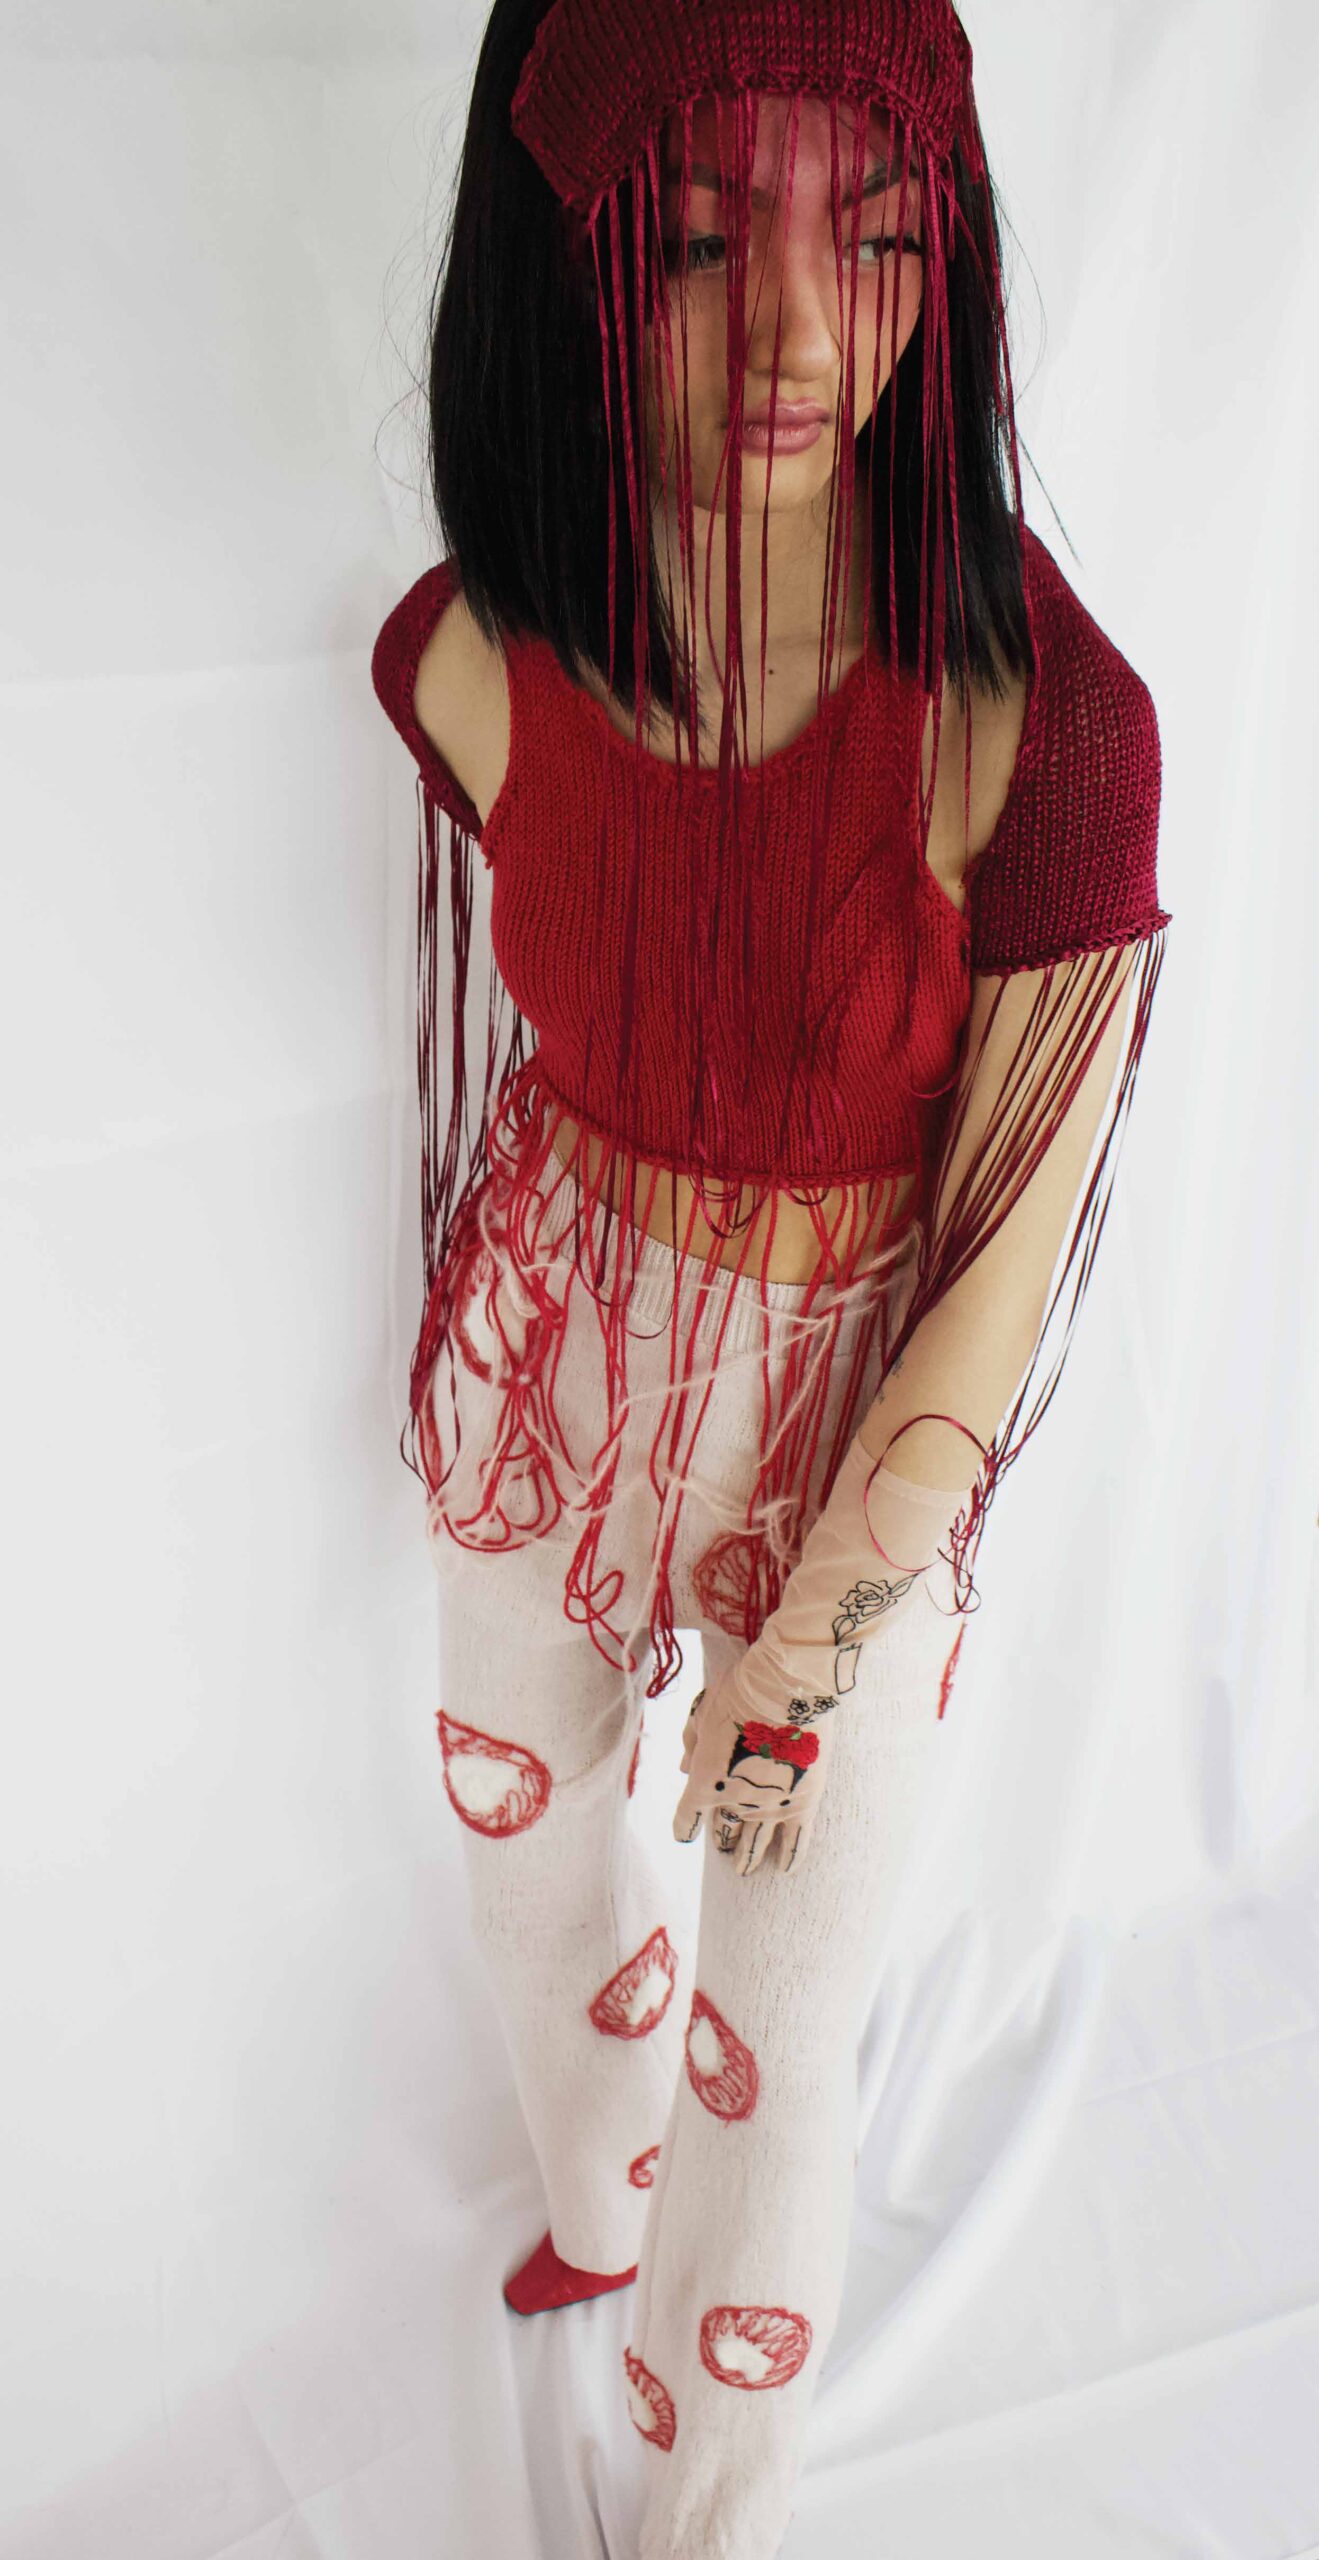 knitGrandeur- Liz (Zixuan) Li: FIT Future of Fashion 2021, Knitwear